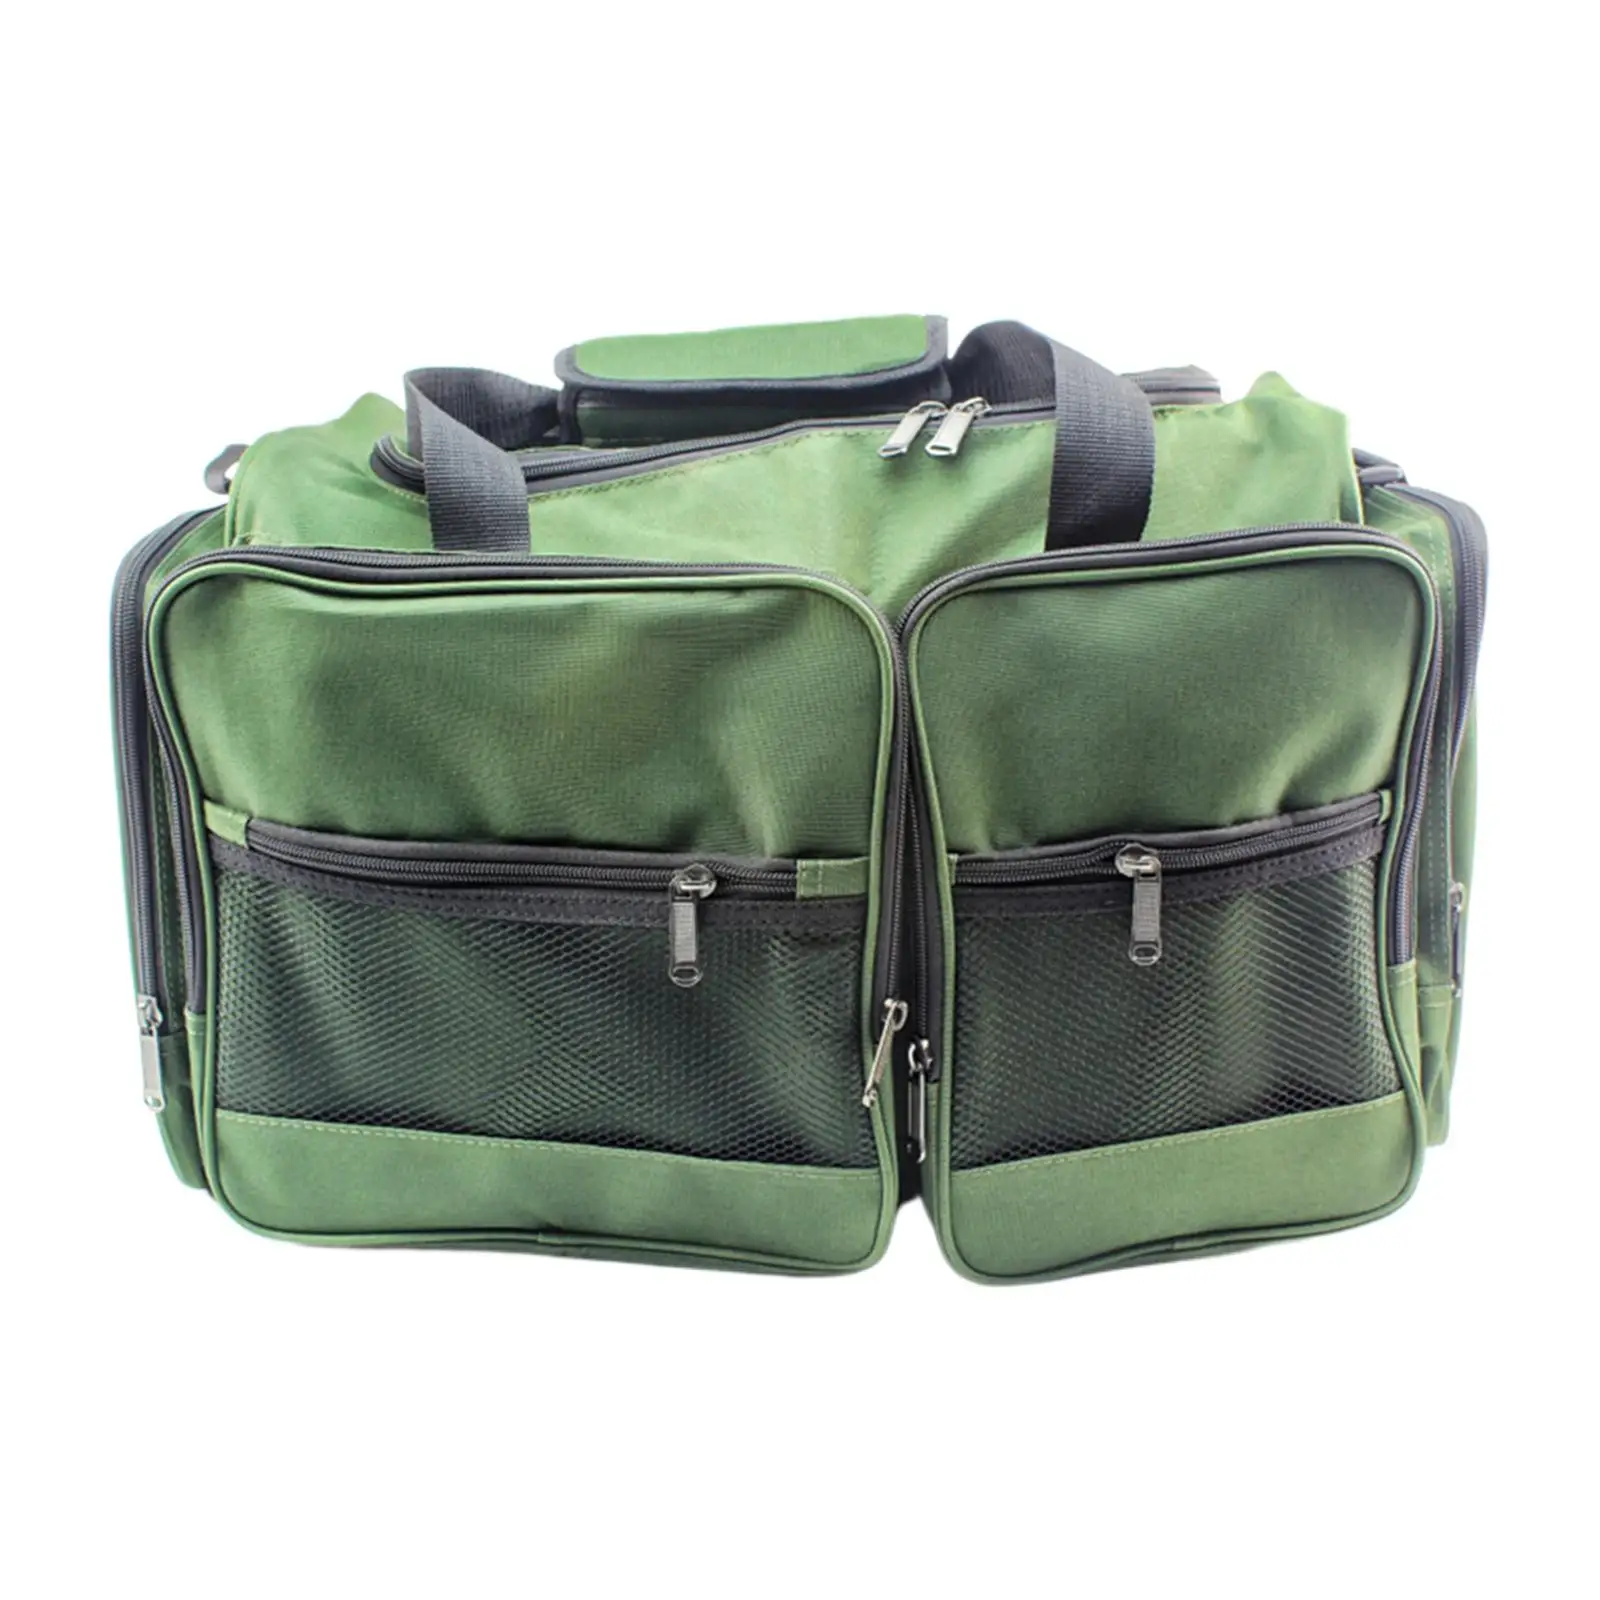 Portable Fishing Backpack Organizer Pack Holder Shoulder Bag for Fishing Travel Hiking